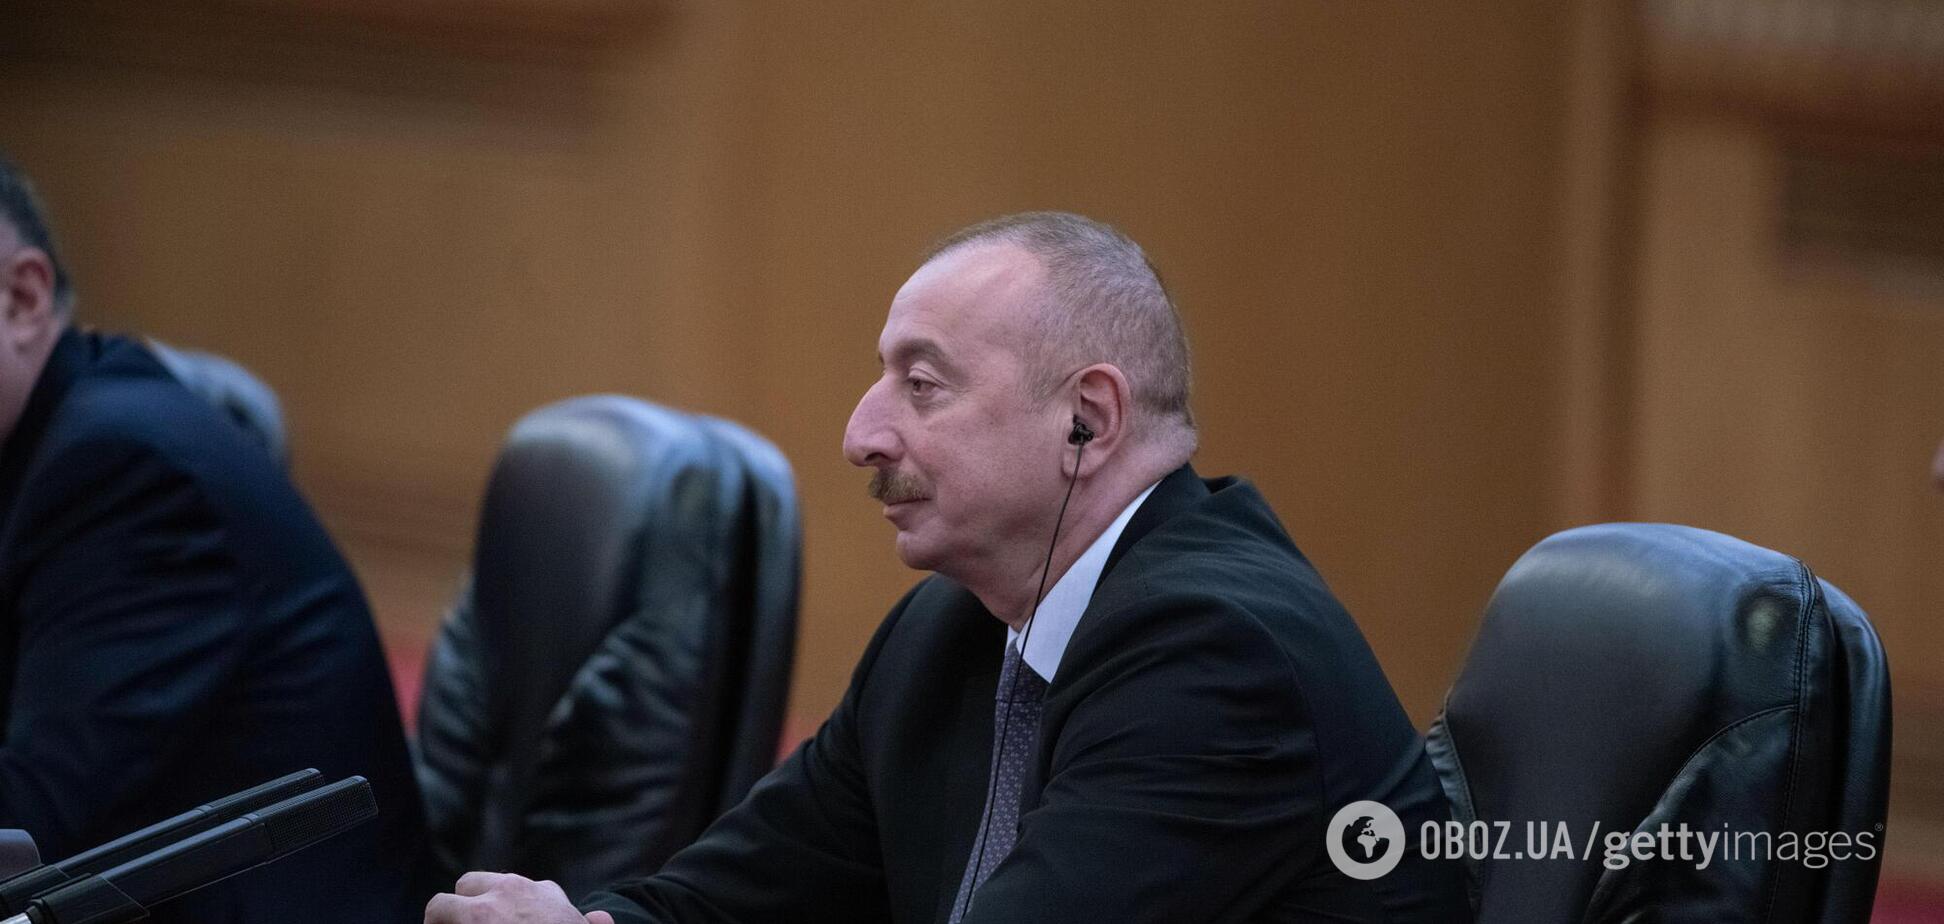  Ильхам Алиев призвал жителей Азербайджана готовиться к критической ситуации